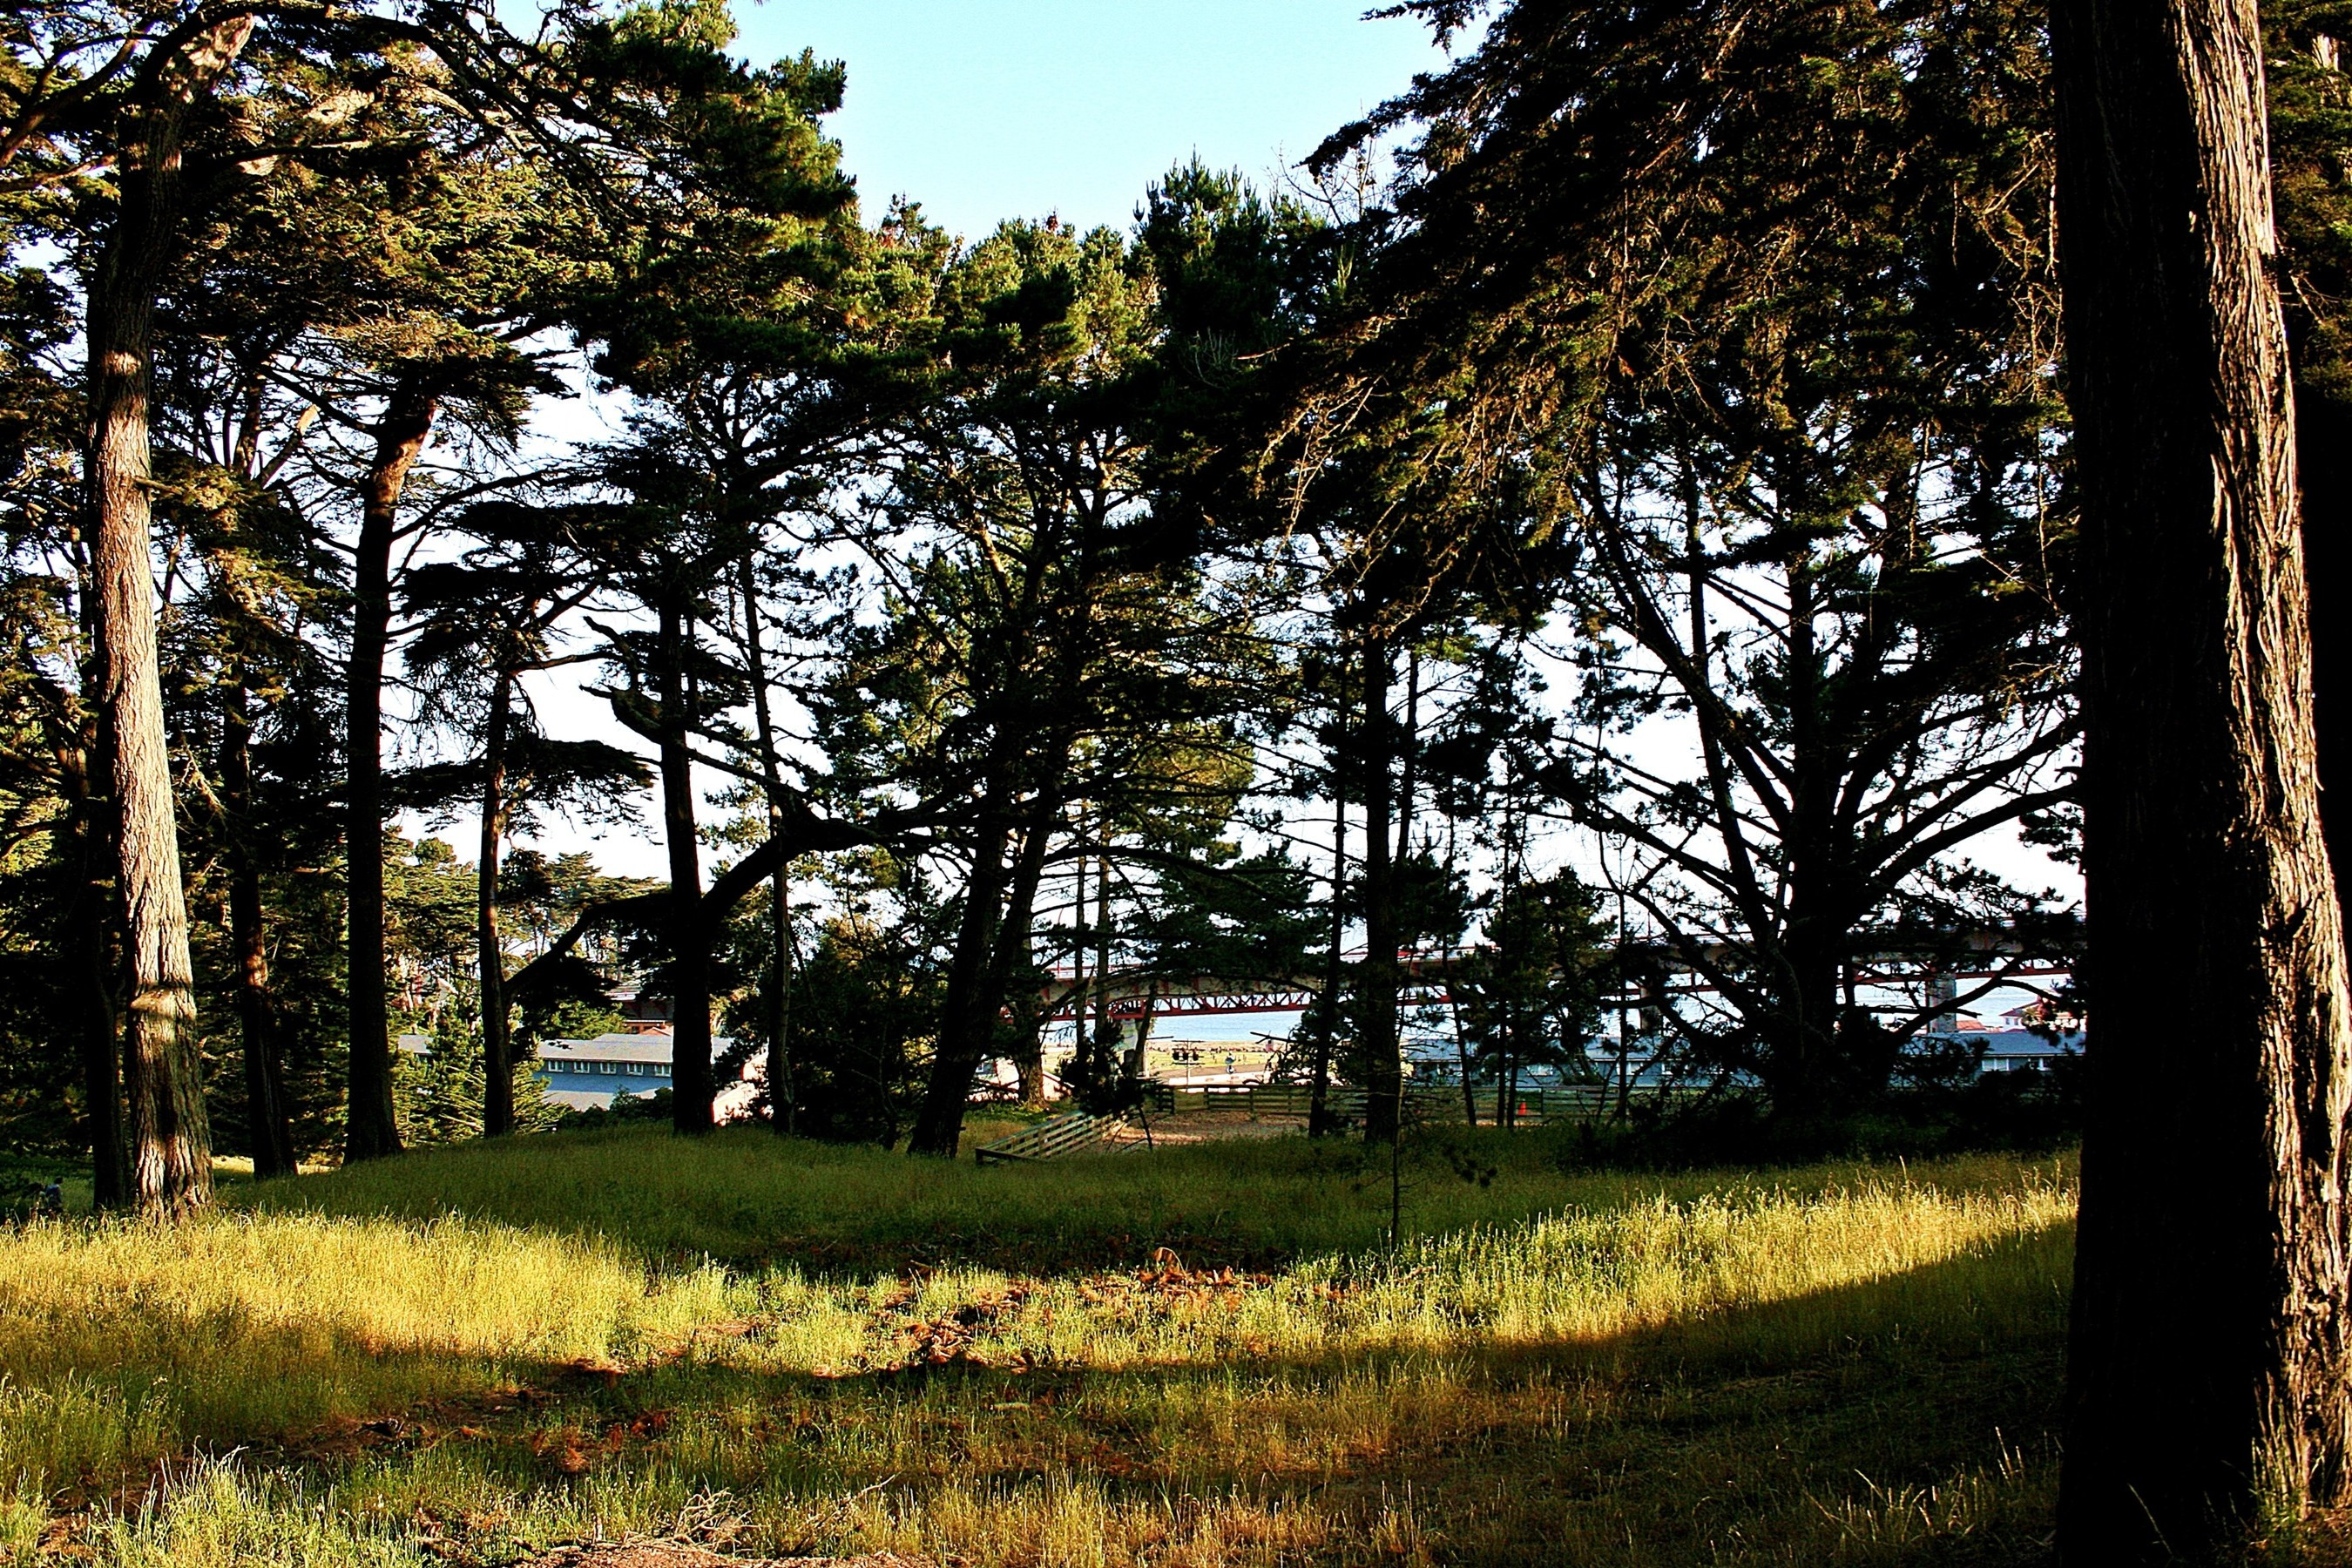 Best ideas about San Francisco Landscape
. Save or Pin nature Landscape Forest USA San Francisco Bay San Now.